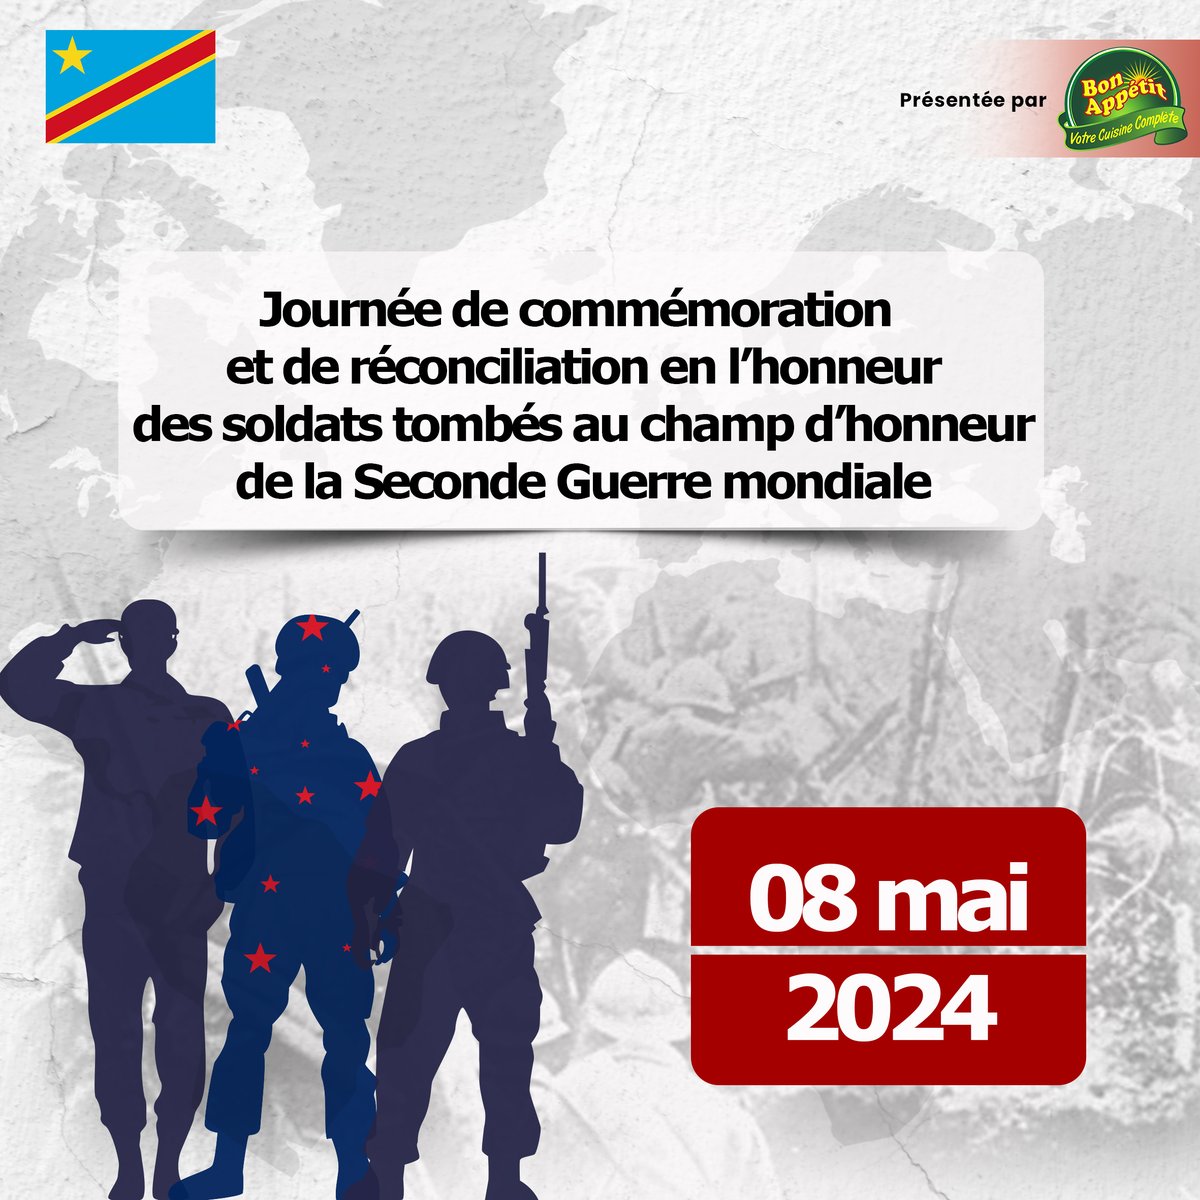 Le 8 mai est la journée de commémoration et de réconciliation en l’honneur des tombés de la seconde guerre Mondiale. Rappelons-nous avec gratitude le sacrifice des hommes et des femmes qui ont donné leur vie pour la liberté et la paix. 

#BonAppetitRDC #Kinshasa #RDC2023 #ELSsarl